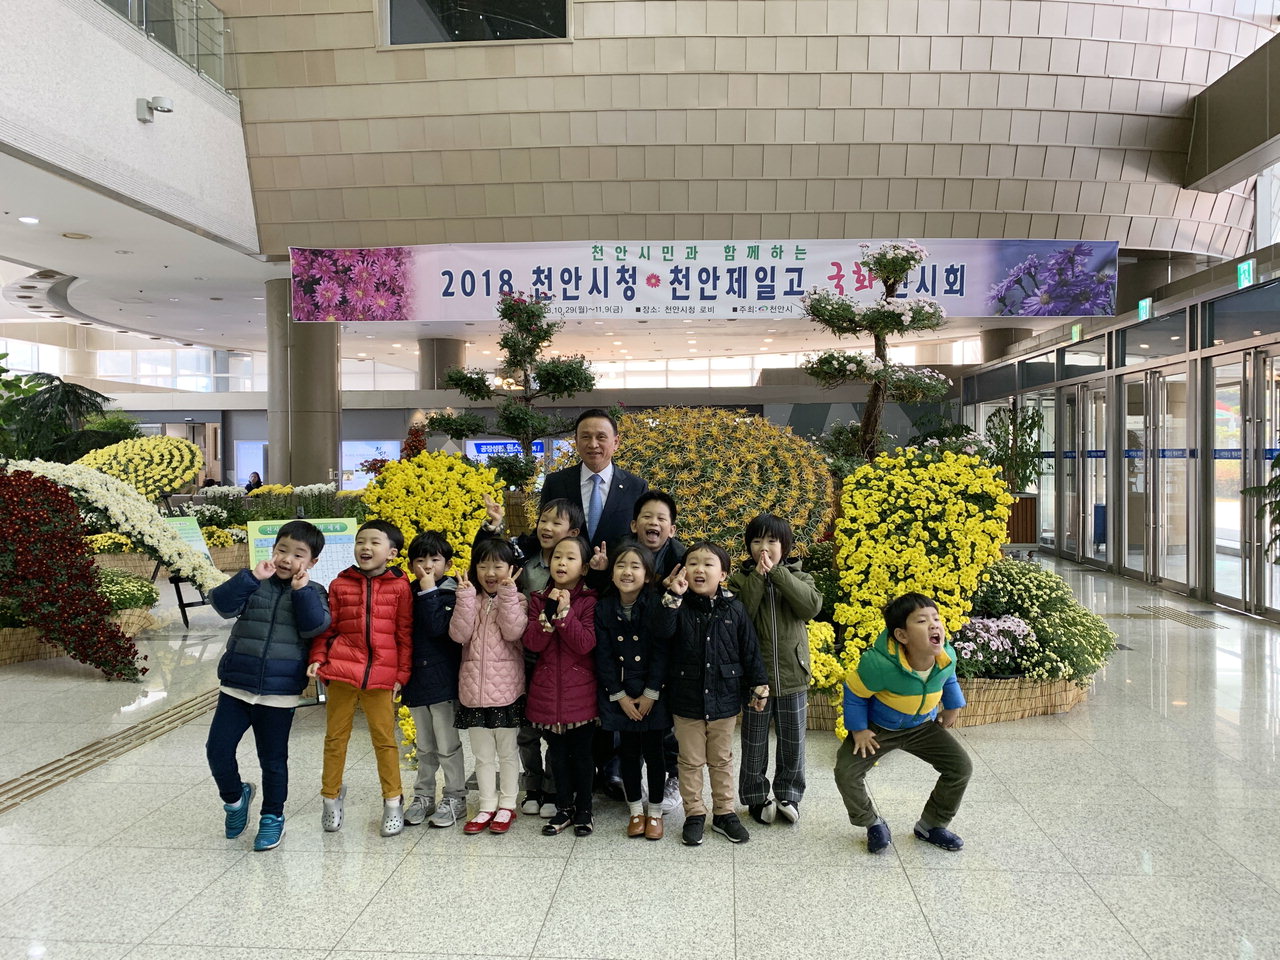 구본영 천안시장이 천안시청사 1층 로비에서 열리고 있는 ‘2018 시민과 함께 공감하고 누리는 국화전시회’를 보러온 아이들과 기념사진을 찍고 있다. / 천안시